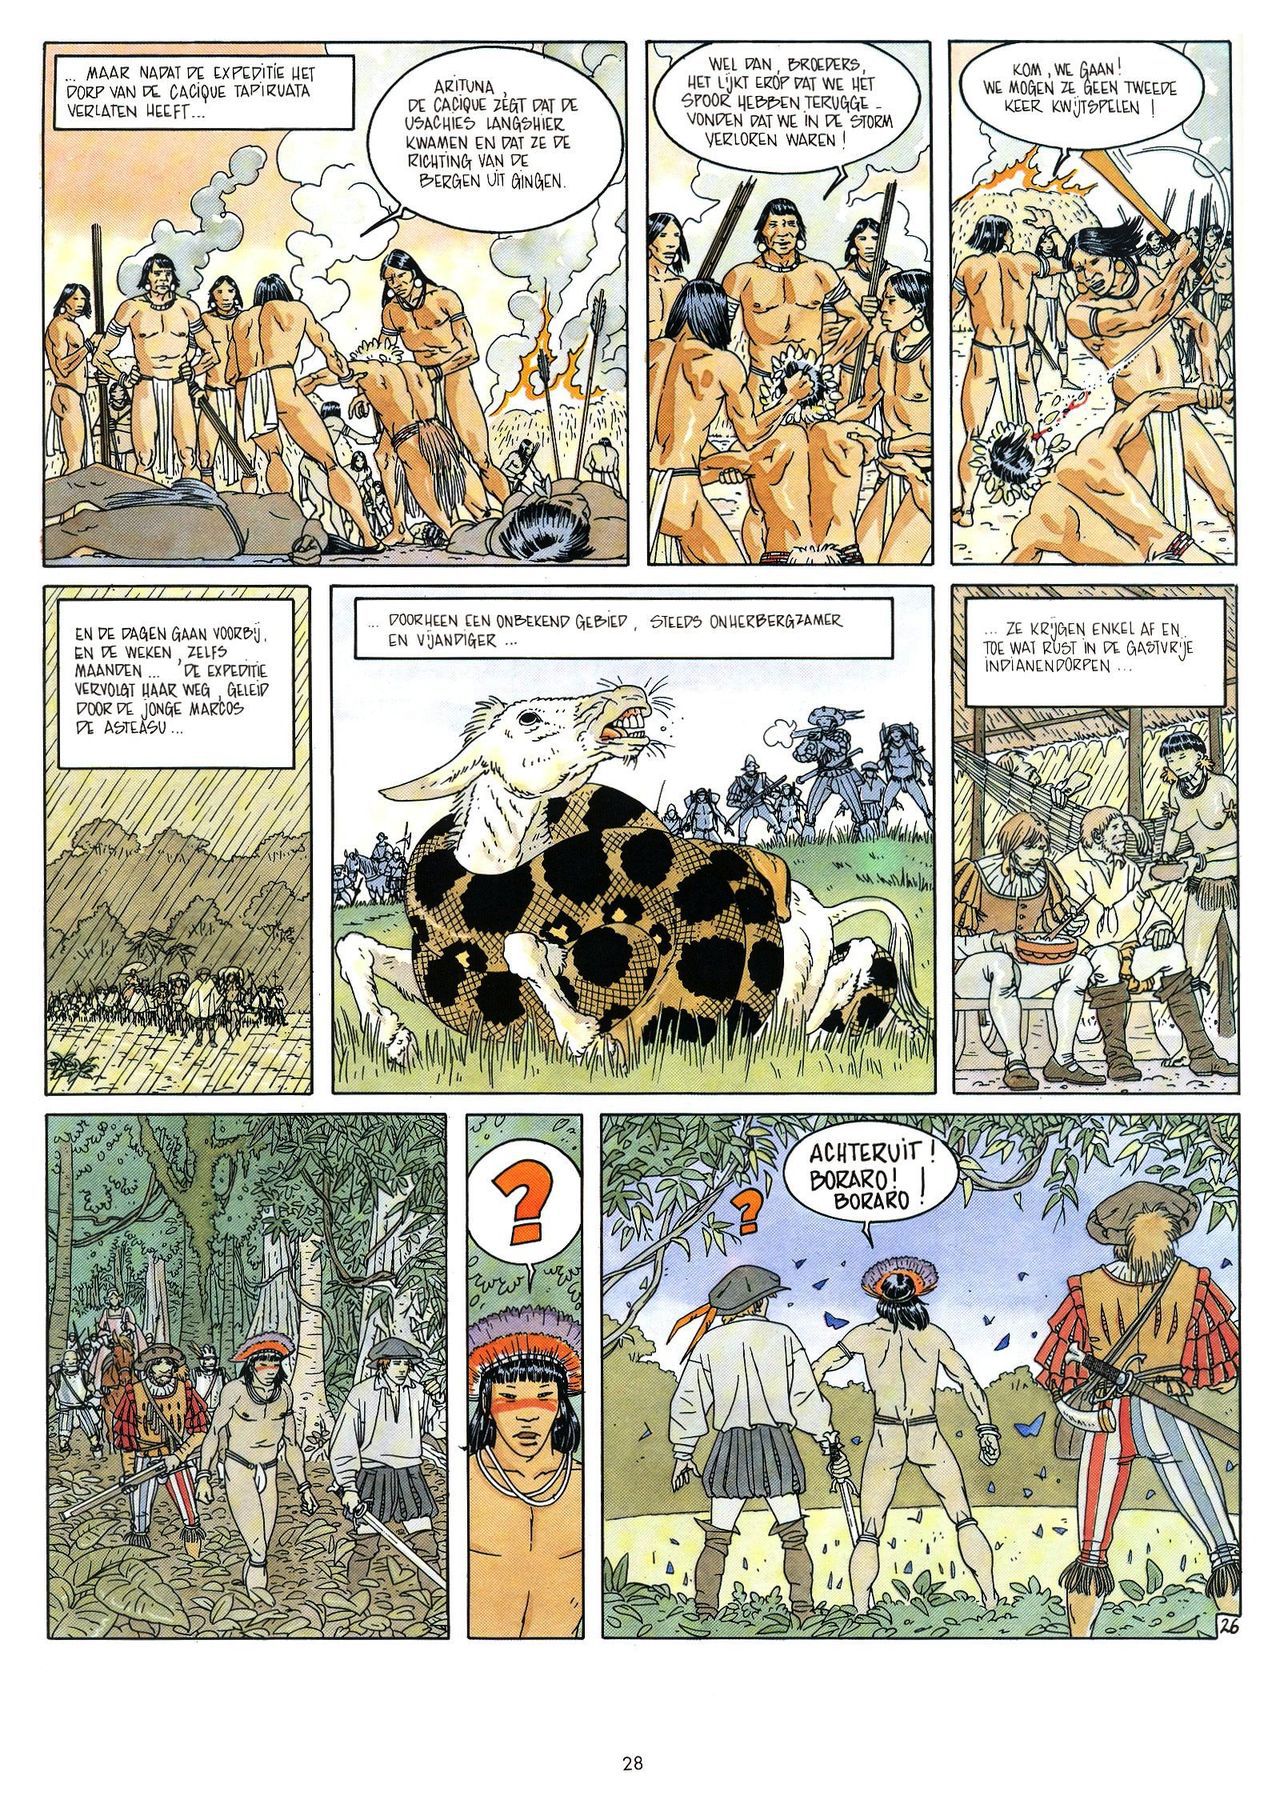 Eldorado - 03 - De Jaguarmensen (Dutch) Franstalige strips die op deze site staan, hier is de Nederlandse uitgave! 28